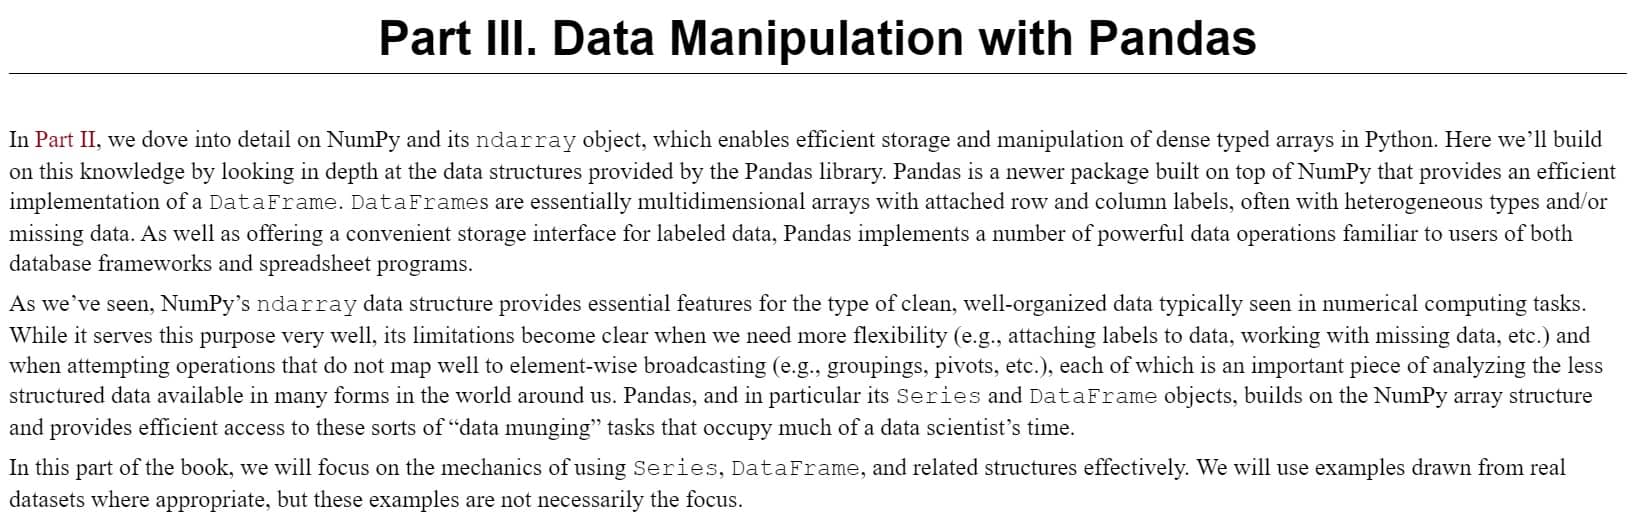 بخش 3 کتاب Python Data Science Handbook ویرایش دوم